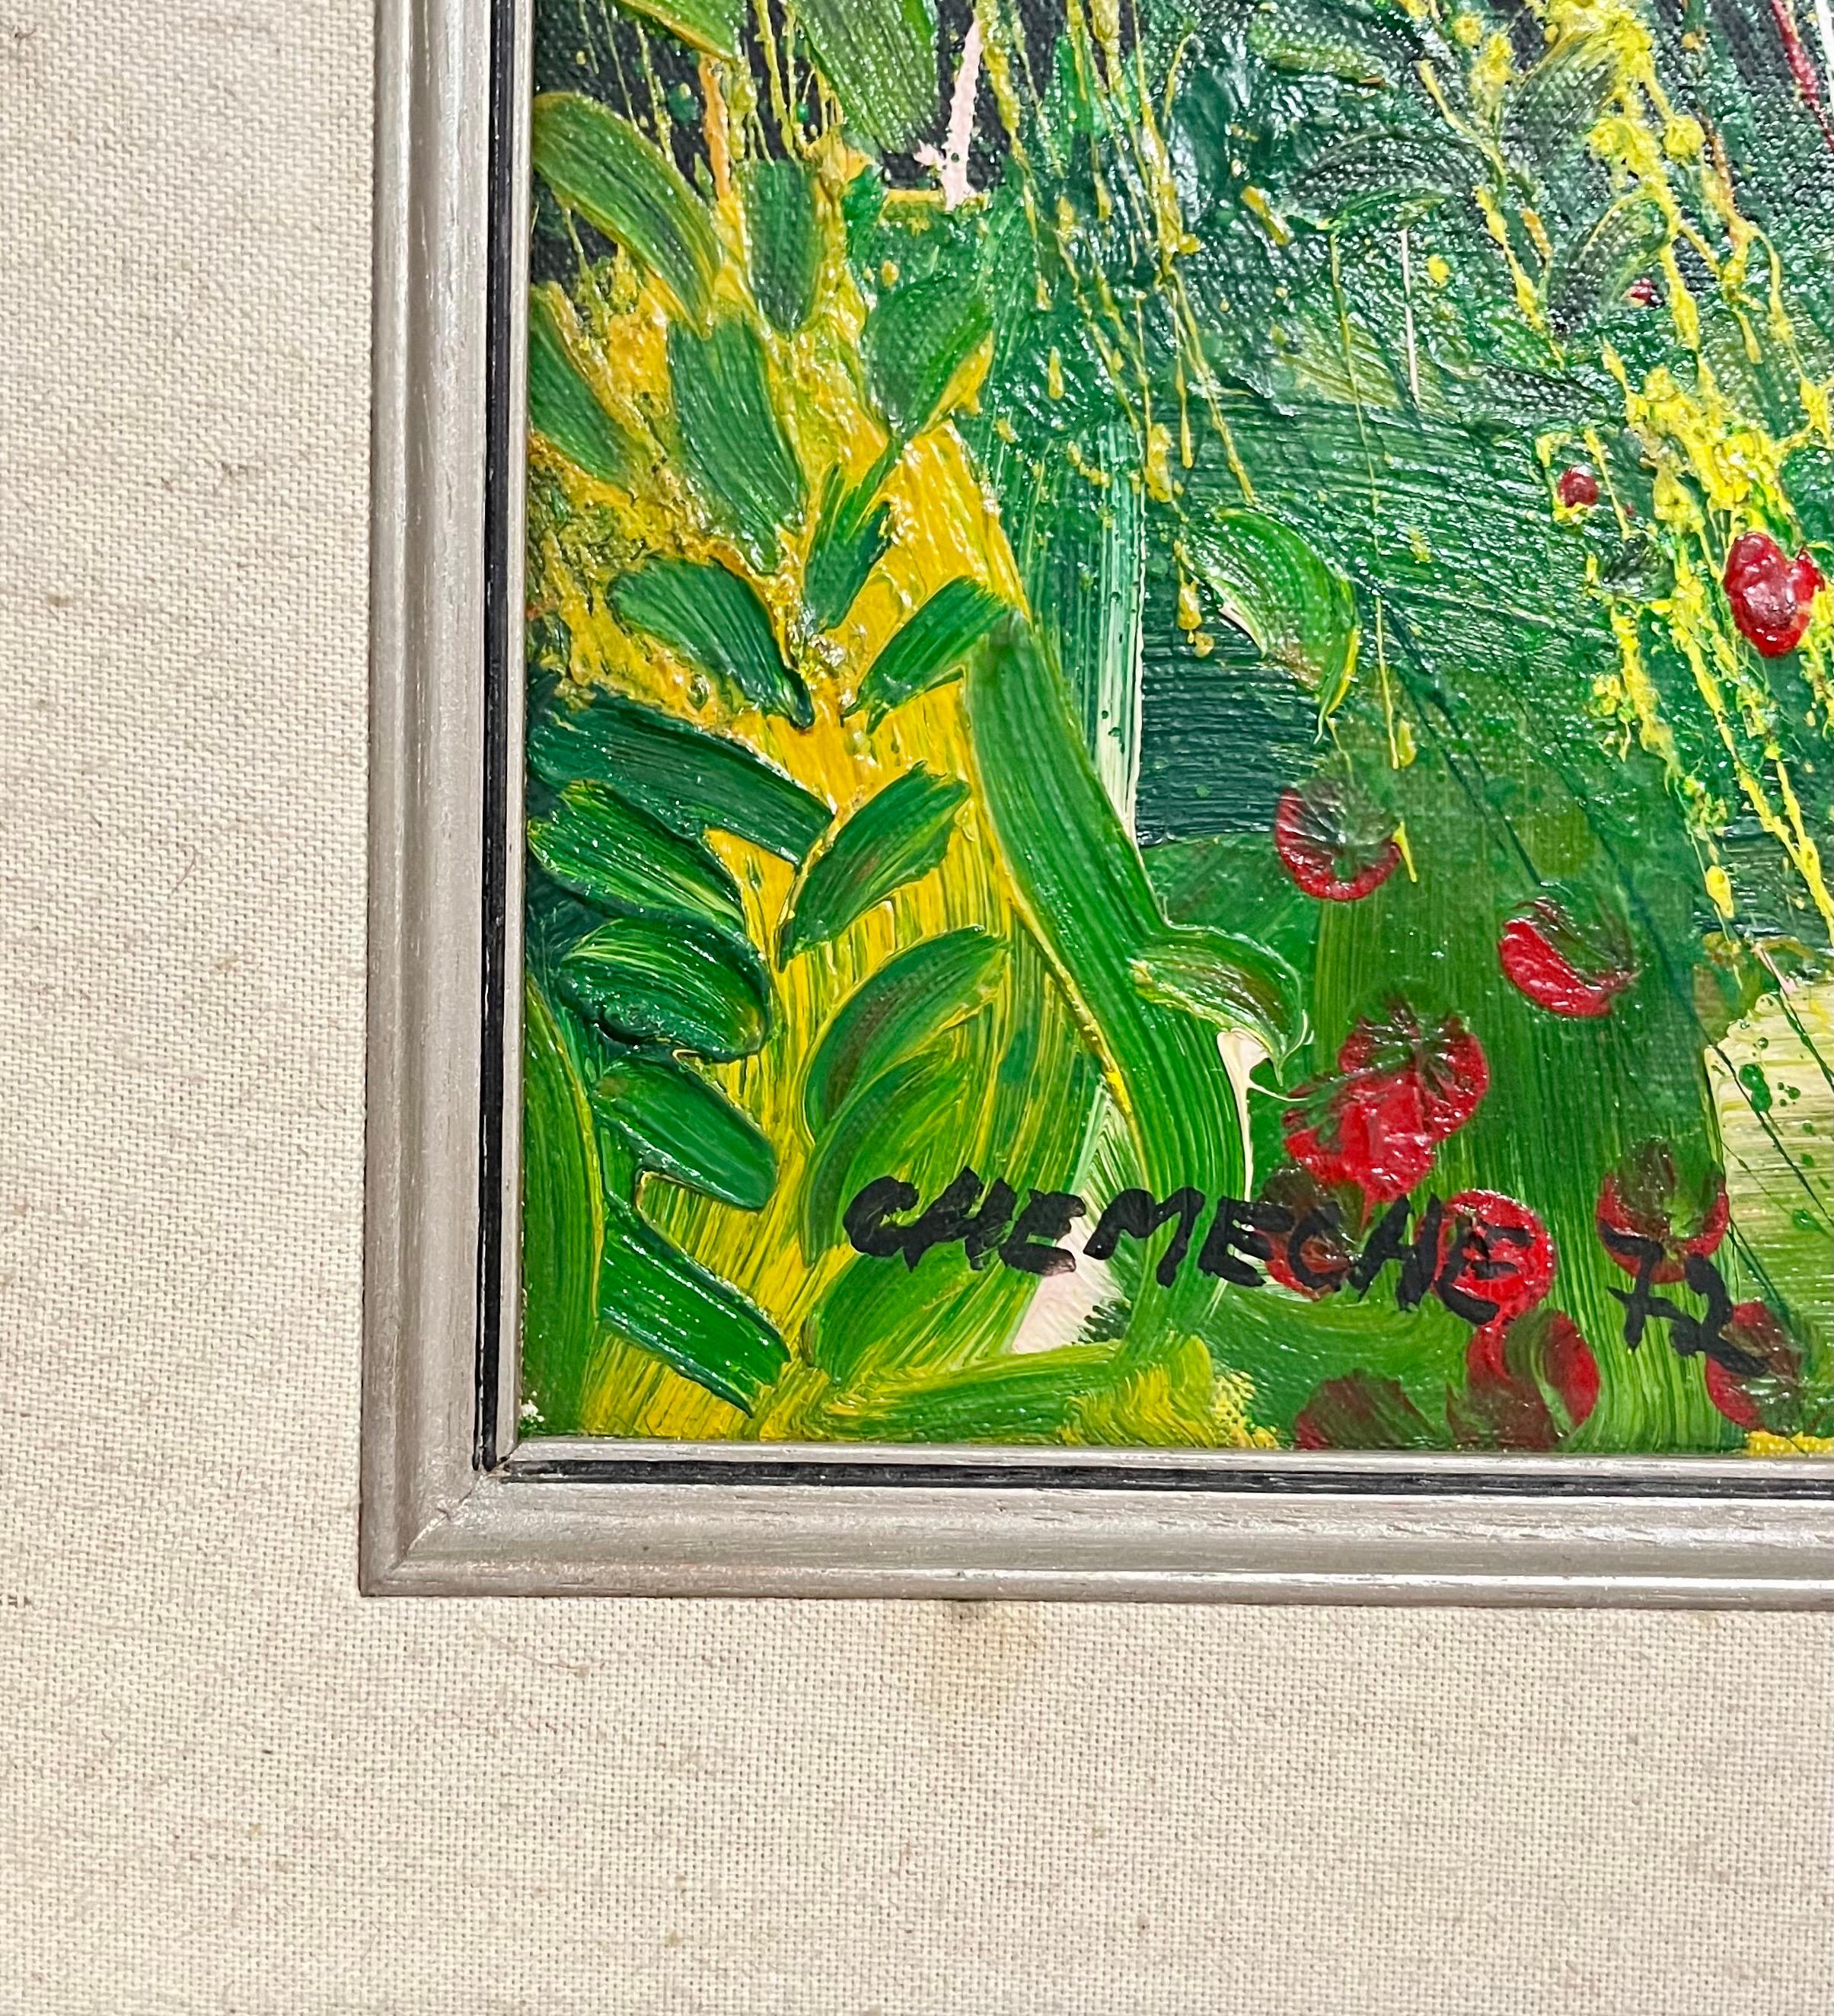 Dies ist ein helles, farbenfrohes Ölgemälde eines chassidischen Musikers in der heiligen Stadt Jerusalem, Israel
1972,  
Öl auf Leinwand, 
29 x 26 Zoll   
Handsigniert und datiert.

George Chemeche, Maler und Bildhauer, geboren 1934 in Basra, Irak.